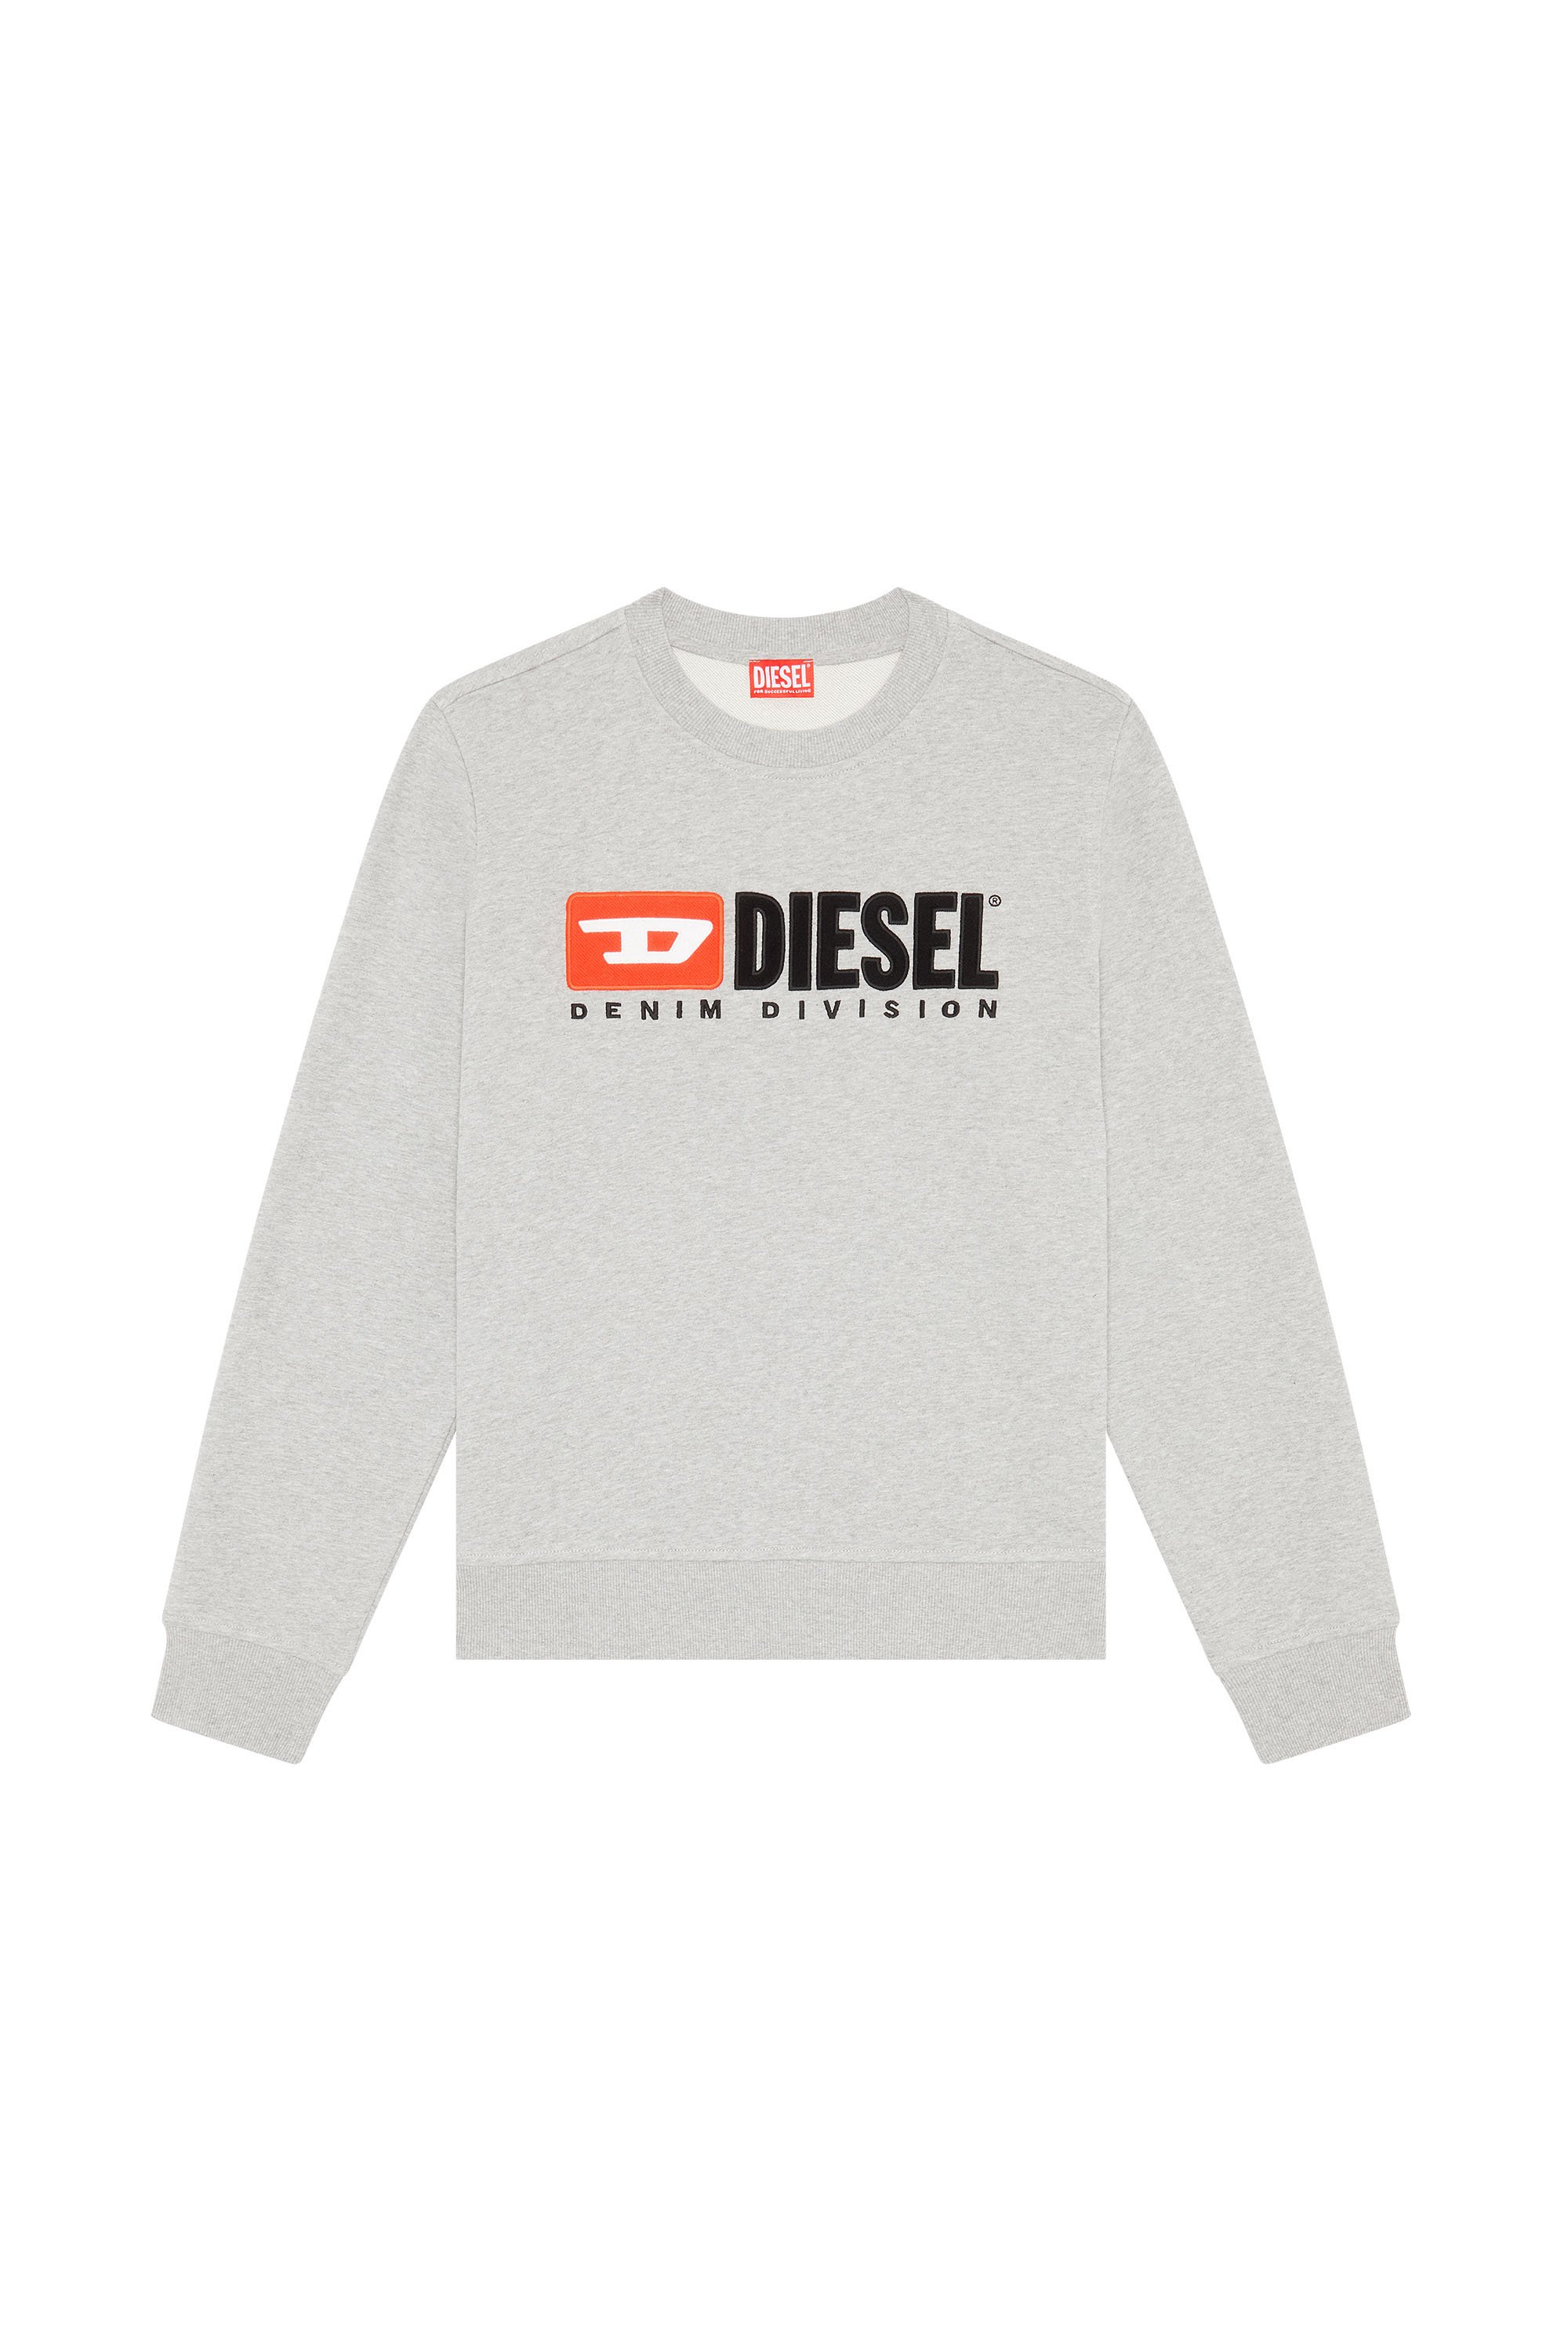 Diesel - S-GINN-DIV, Grigio - Image 3